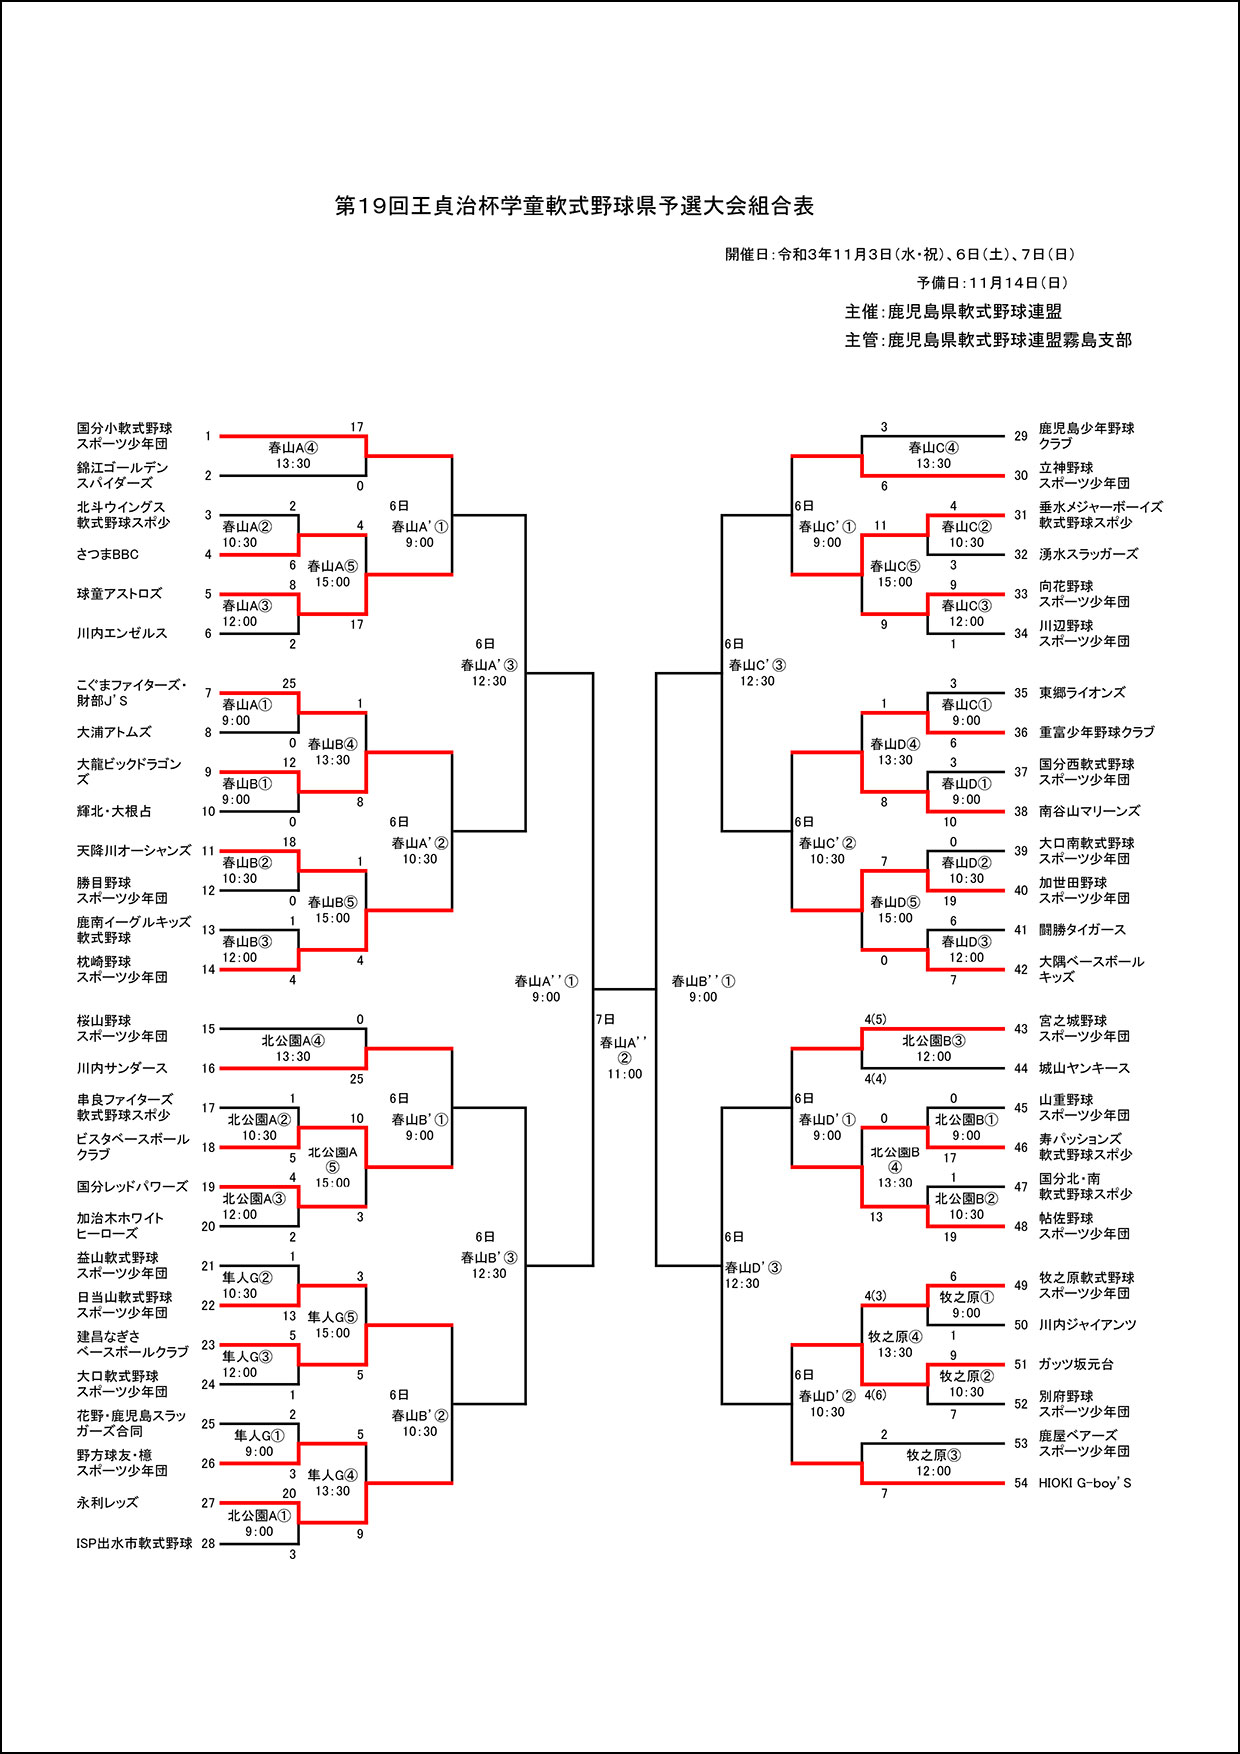 【途中経過】11月開催 王貞治杯トーナメント表